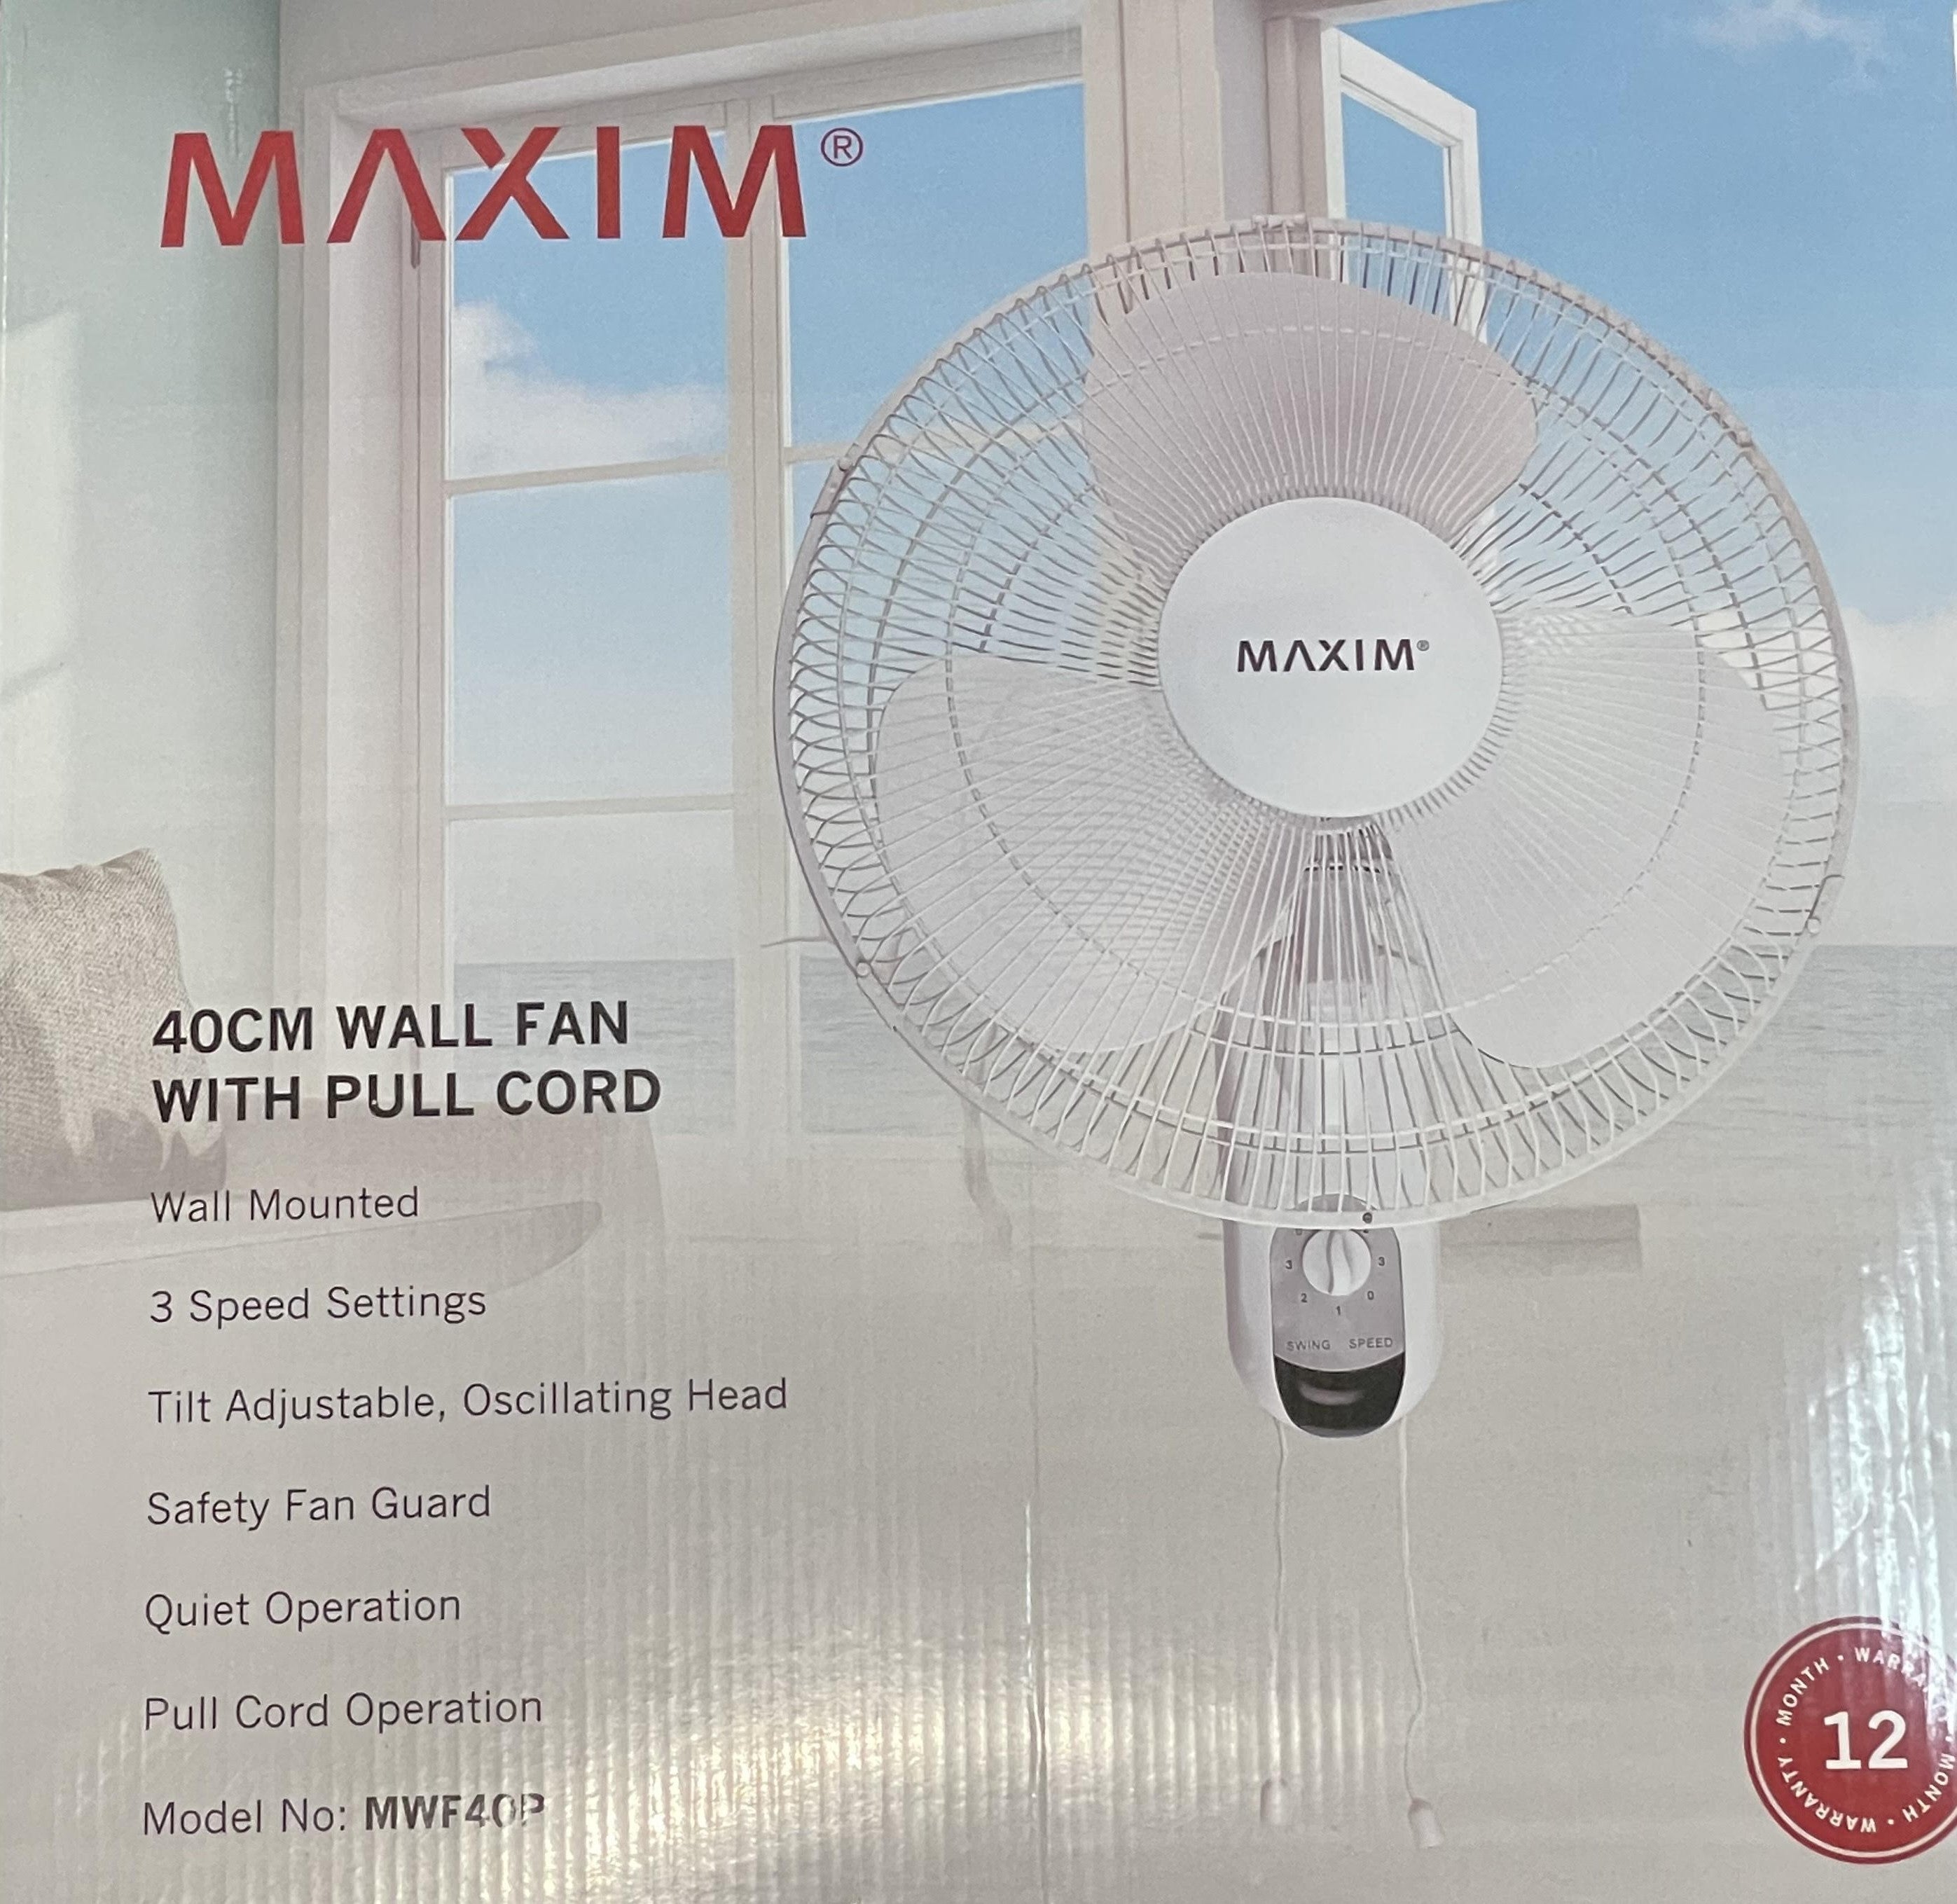 Maxim / Heller Oscillating Wall Fan 40CM 50W